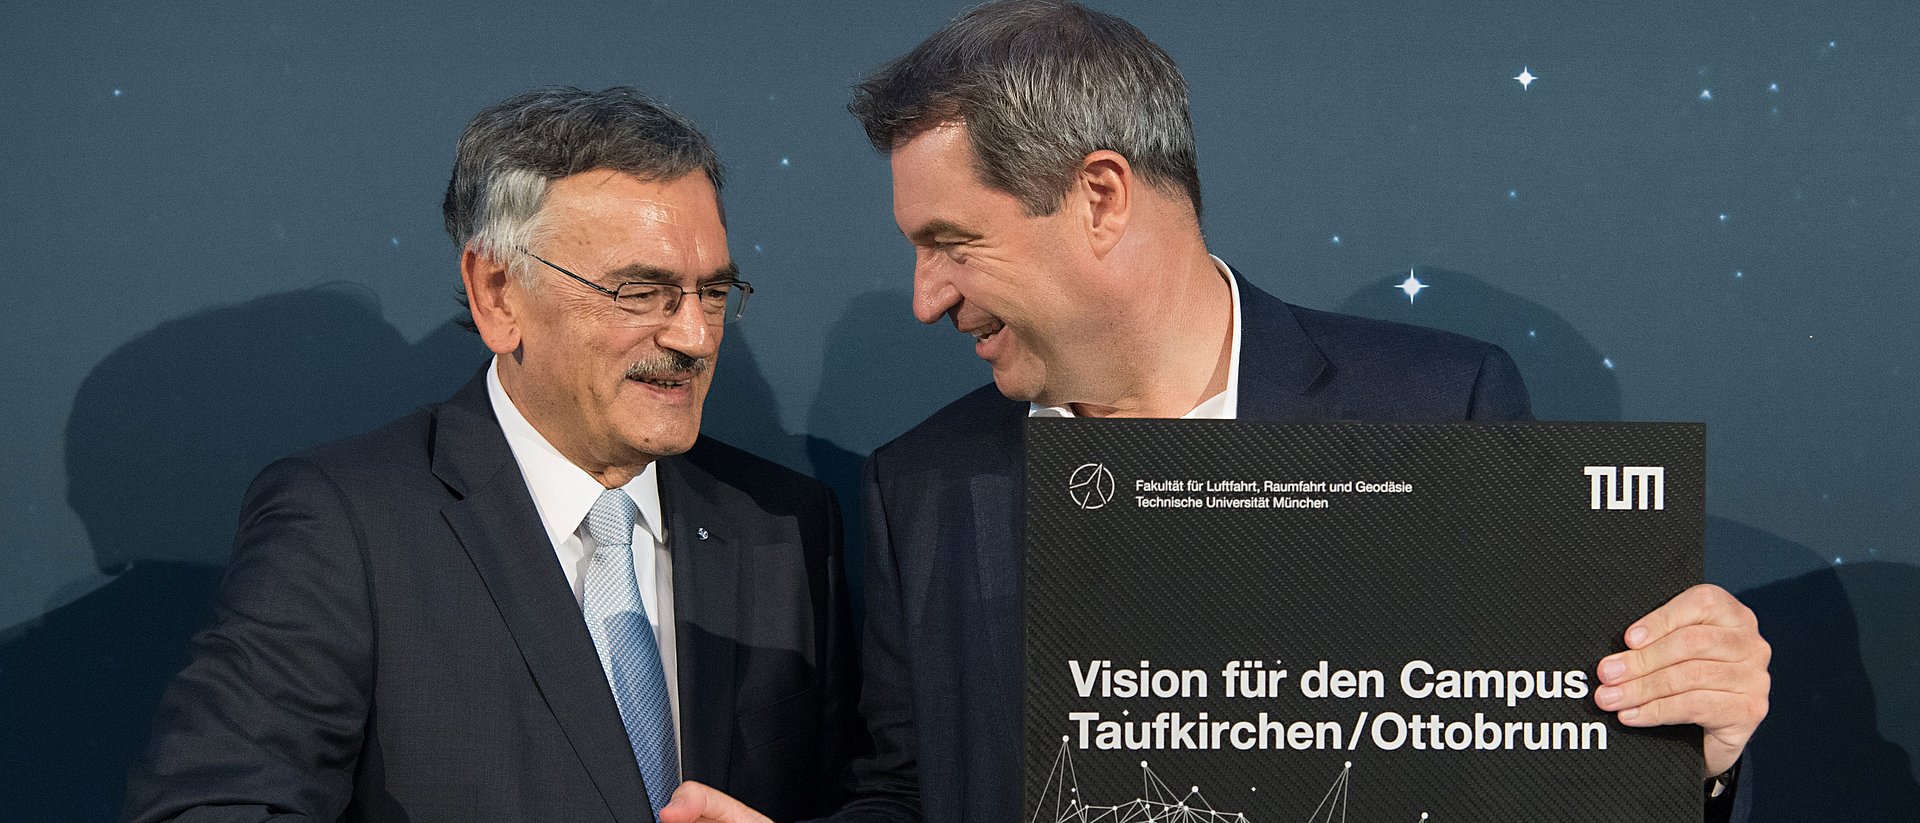 TUM President Prof. Wolfgang A. Herrmann with Bavarian Minister President Dr. Markus Söder.